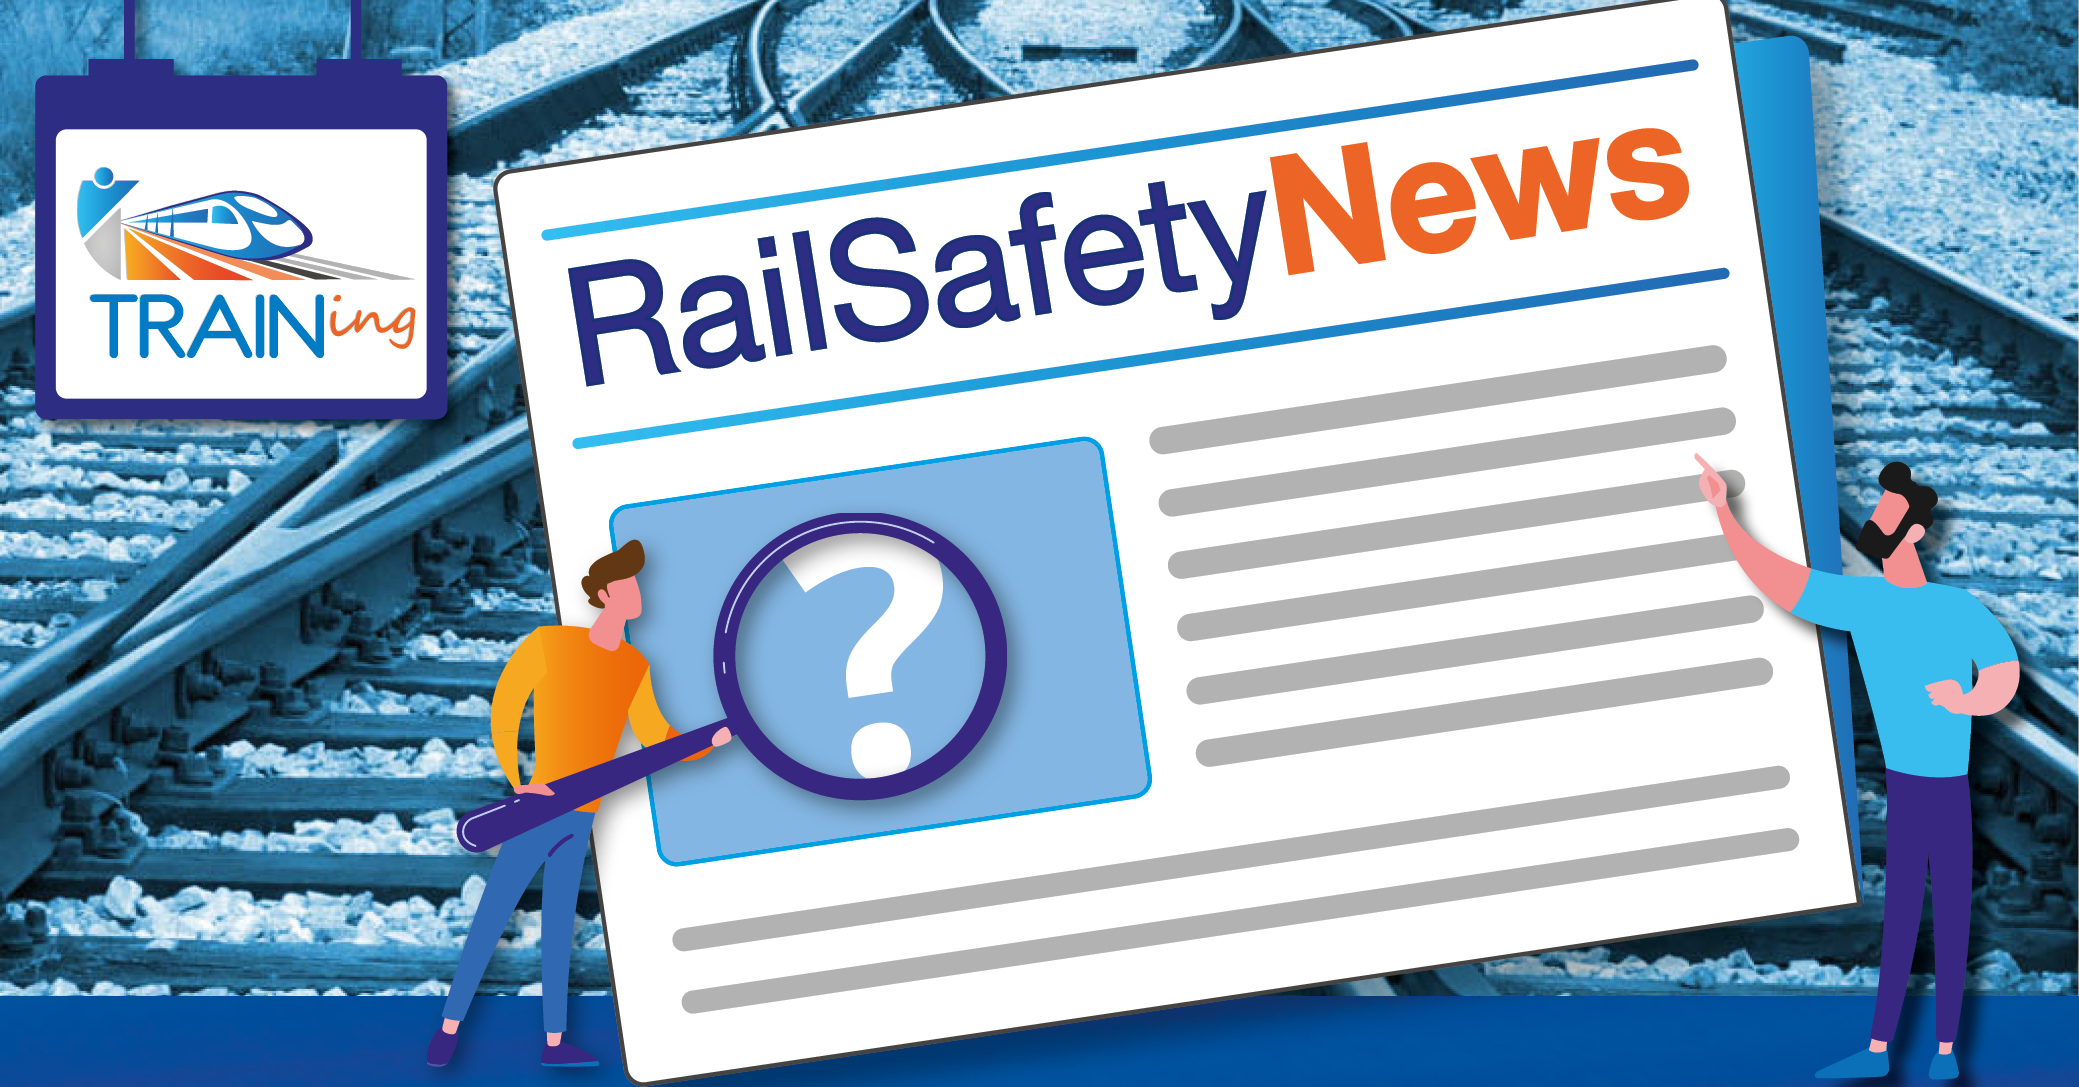 RailSafetyNews n°13